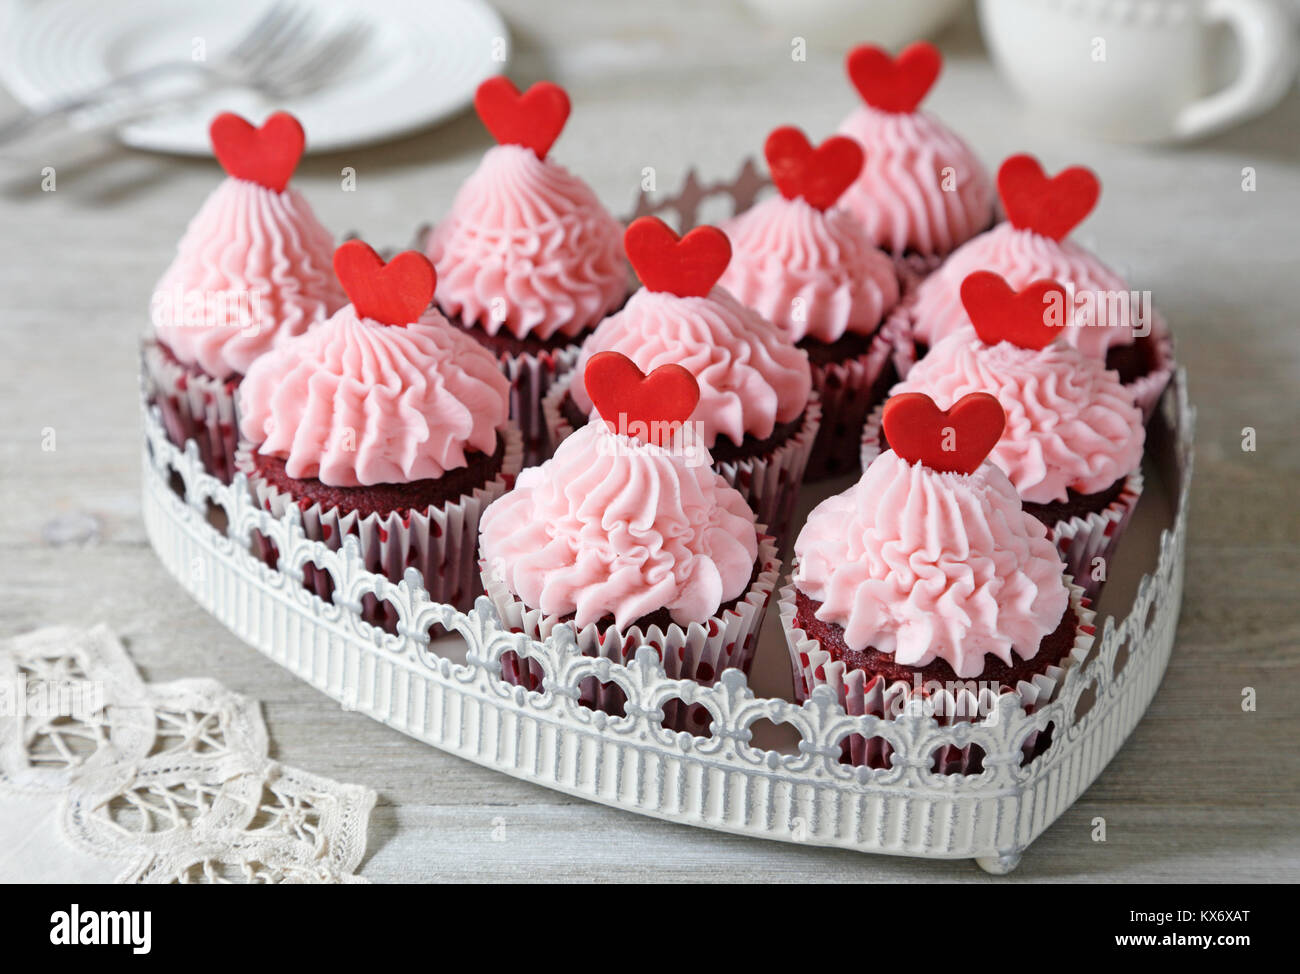 Cupcakes. Red Velvet cupcakes décorés de cœurs rouges Banque D'Images